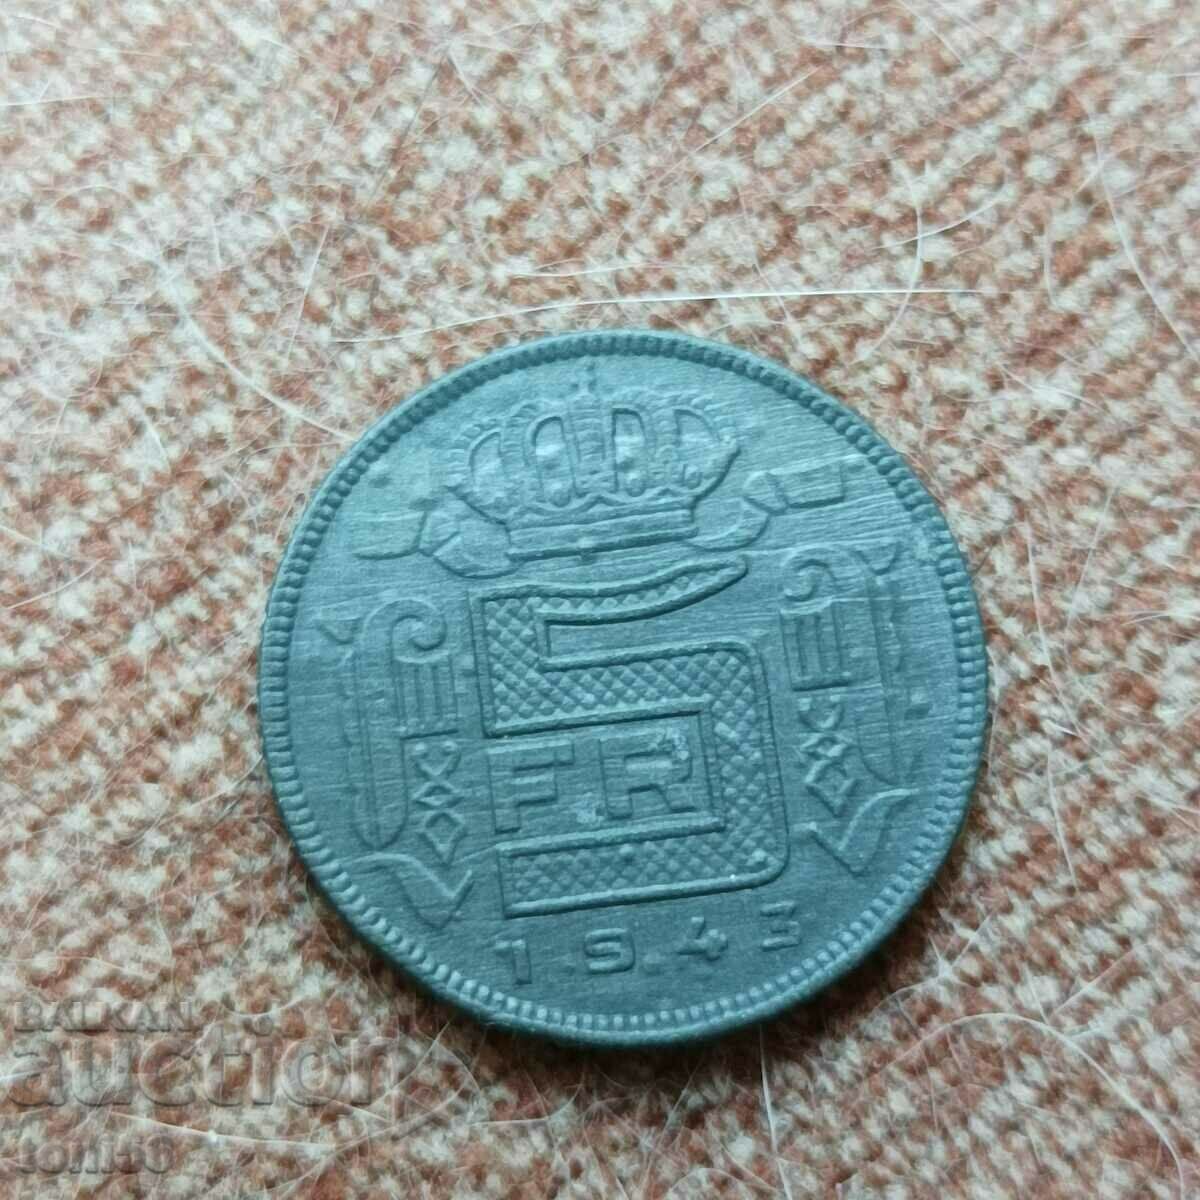 Belgium 5 francs 1943 zinc